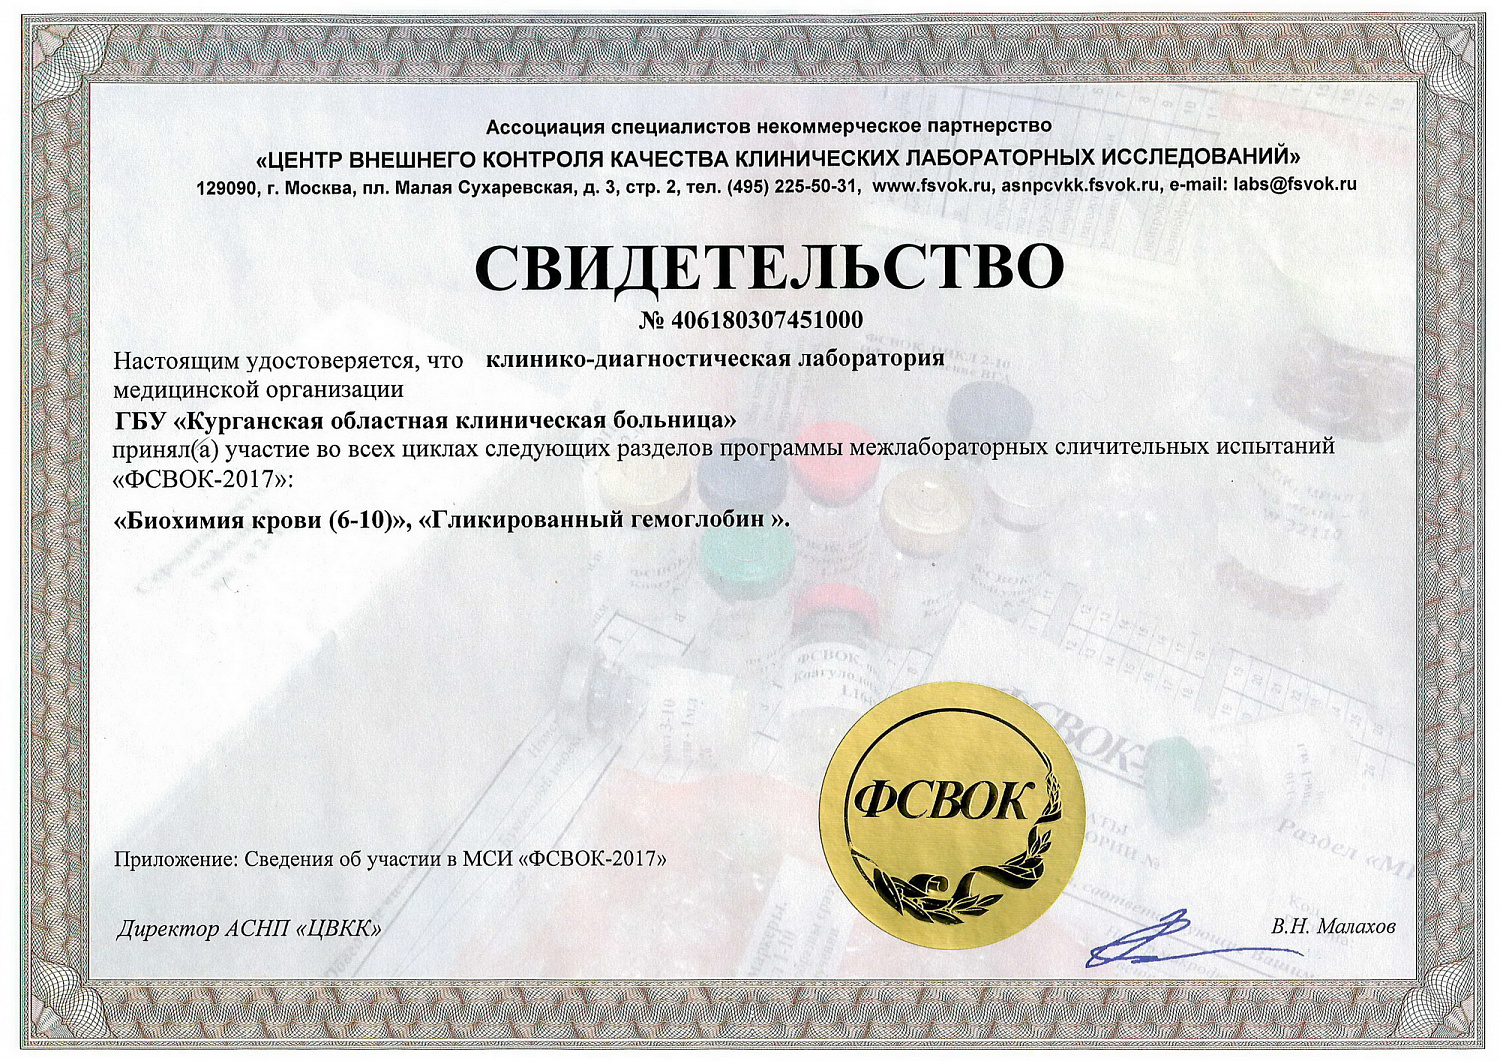 Клинико-диагностическая лаборатория ГБУ «КОКБ» получила международный сертификат EQAS